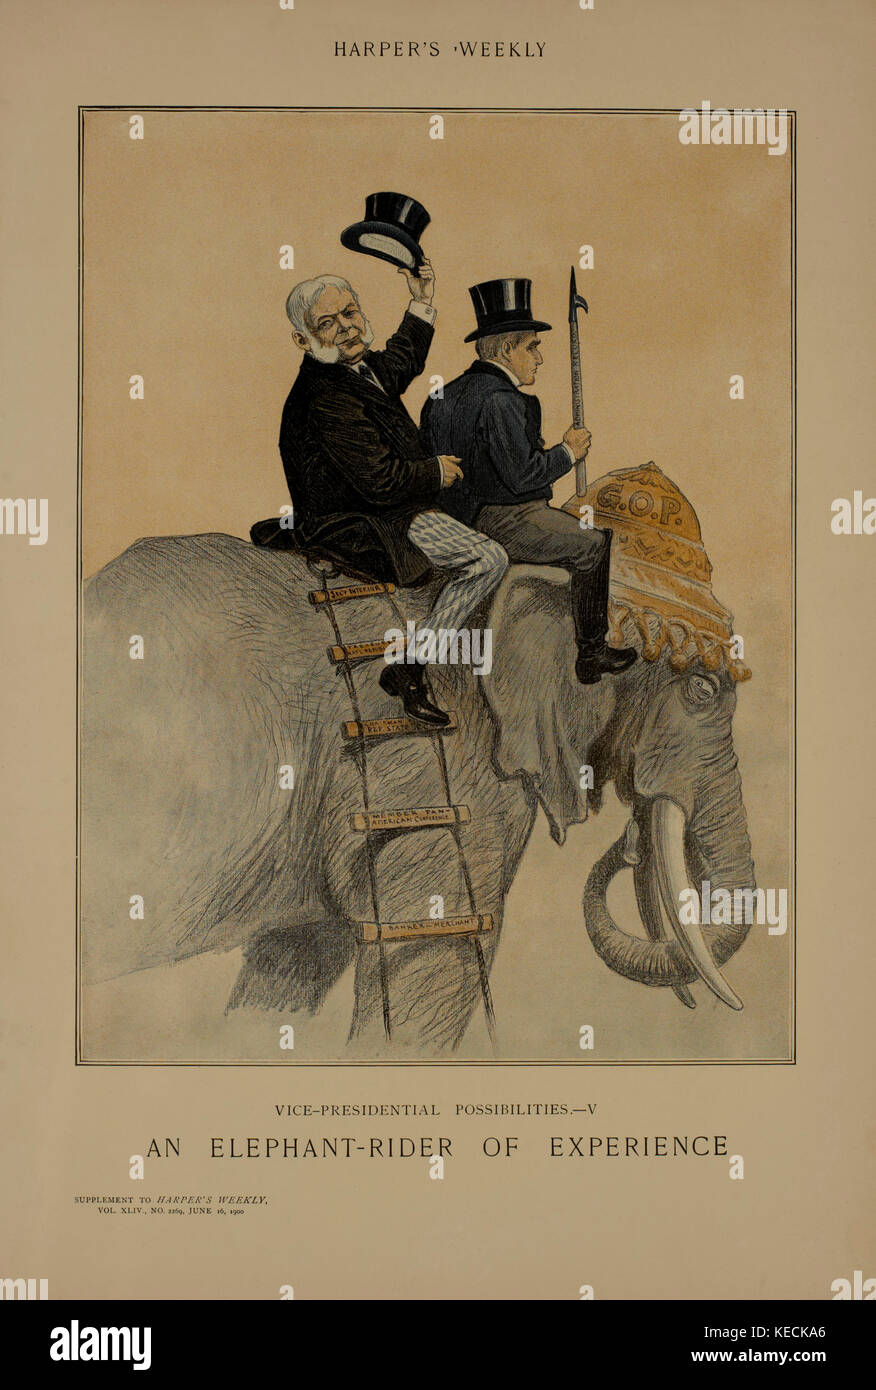 Vice-Presidential possibilités V, un éléphant-Rider d'expérience, Harper's Weekly Supplement, 16 juin 1900 Banque D'Images